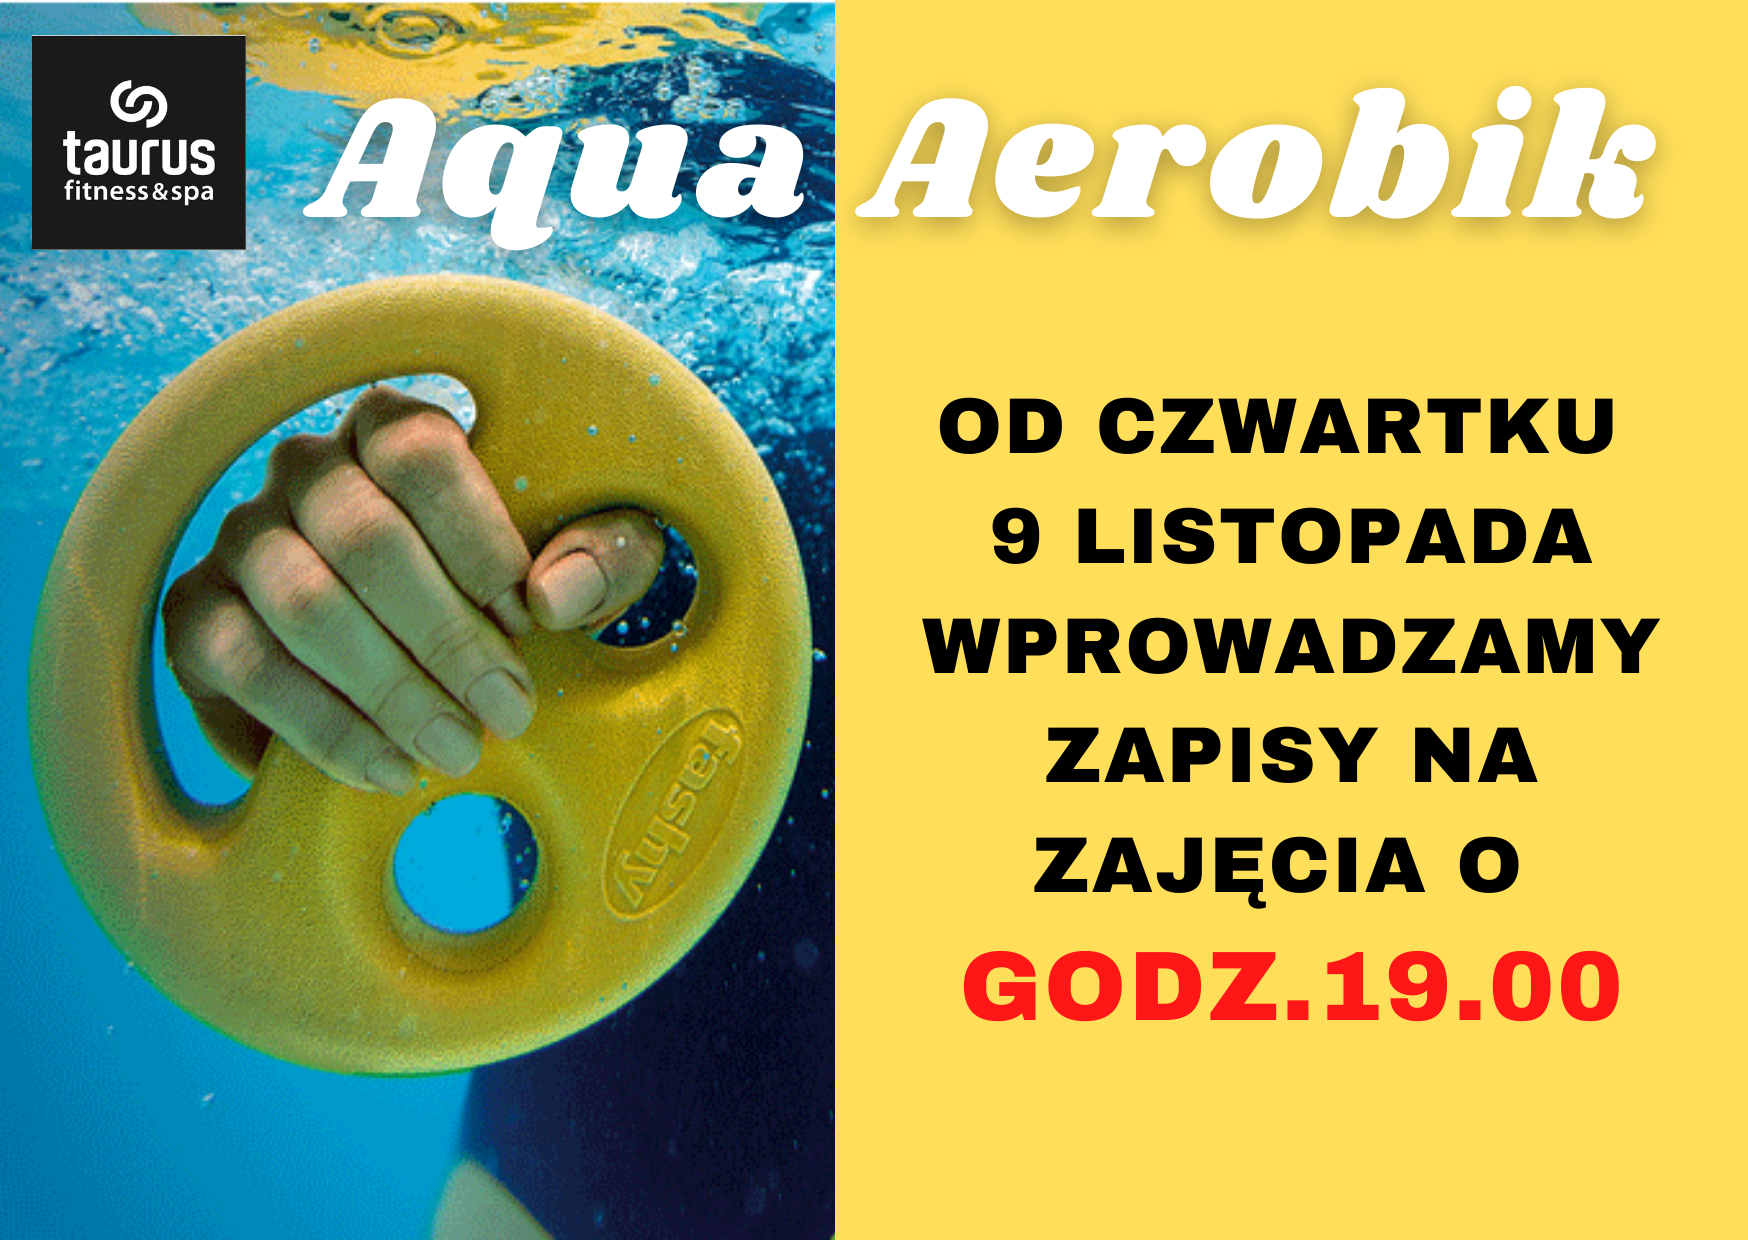 Zapisy na zajęcia Aqua Aerobik o godz. 19:00!